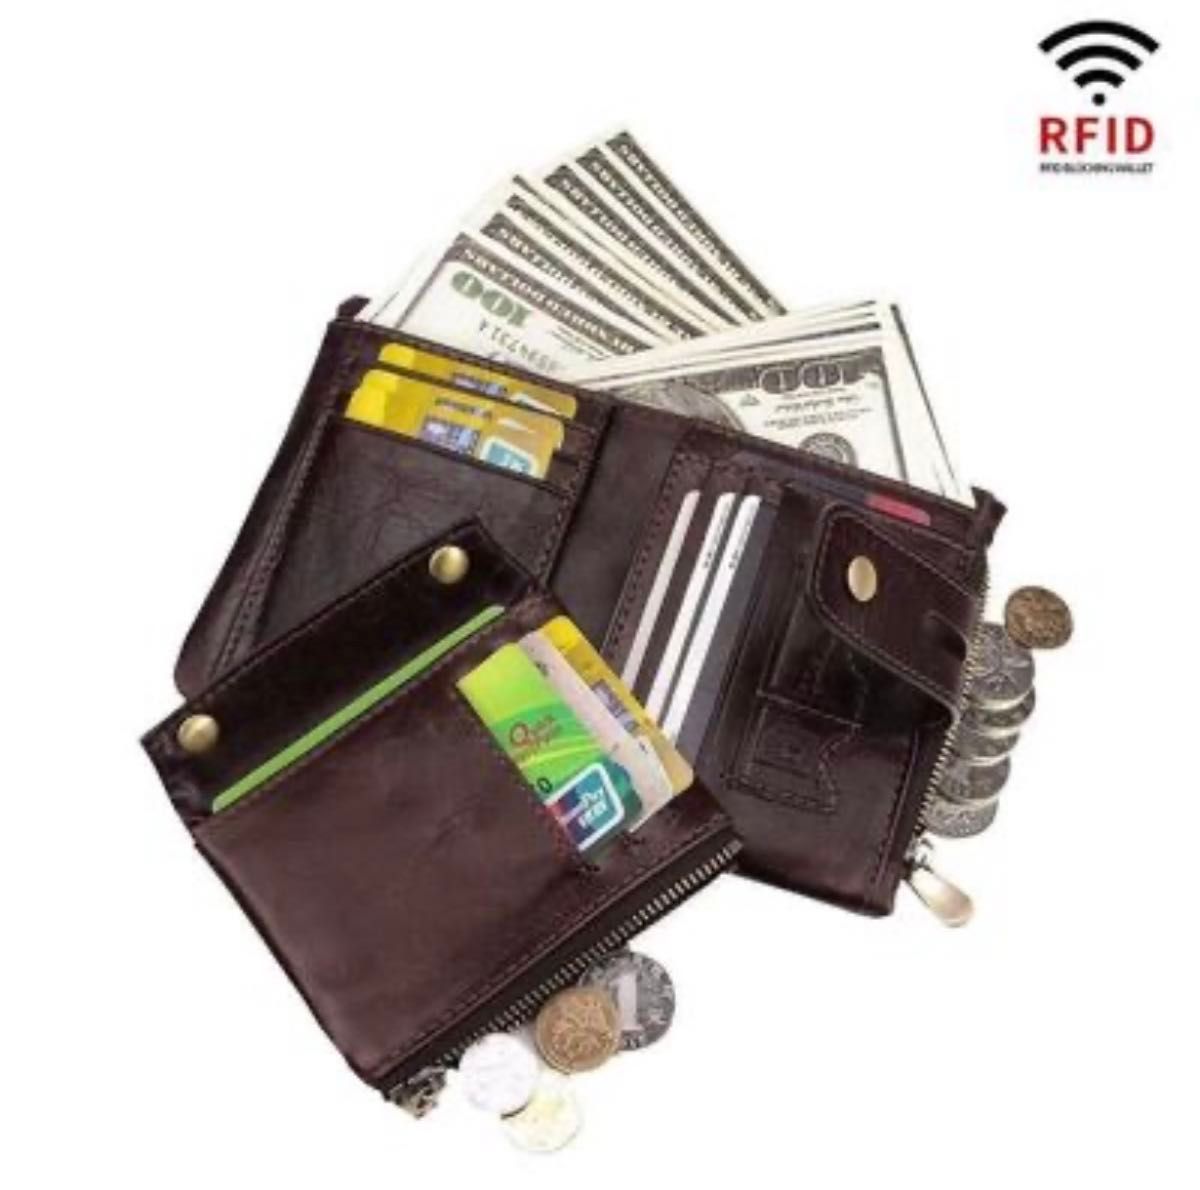 RFID防止 メンズ 二つ折り財布 本革 隠しポケット付き ブラック